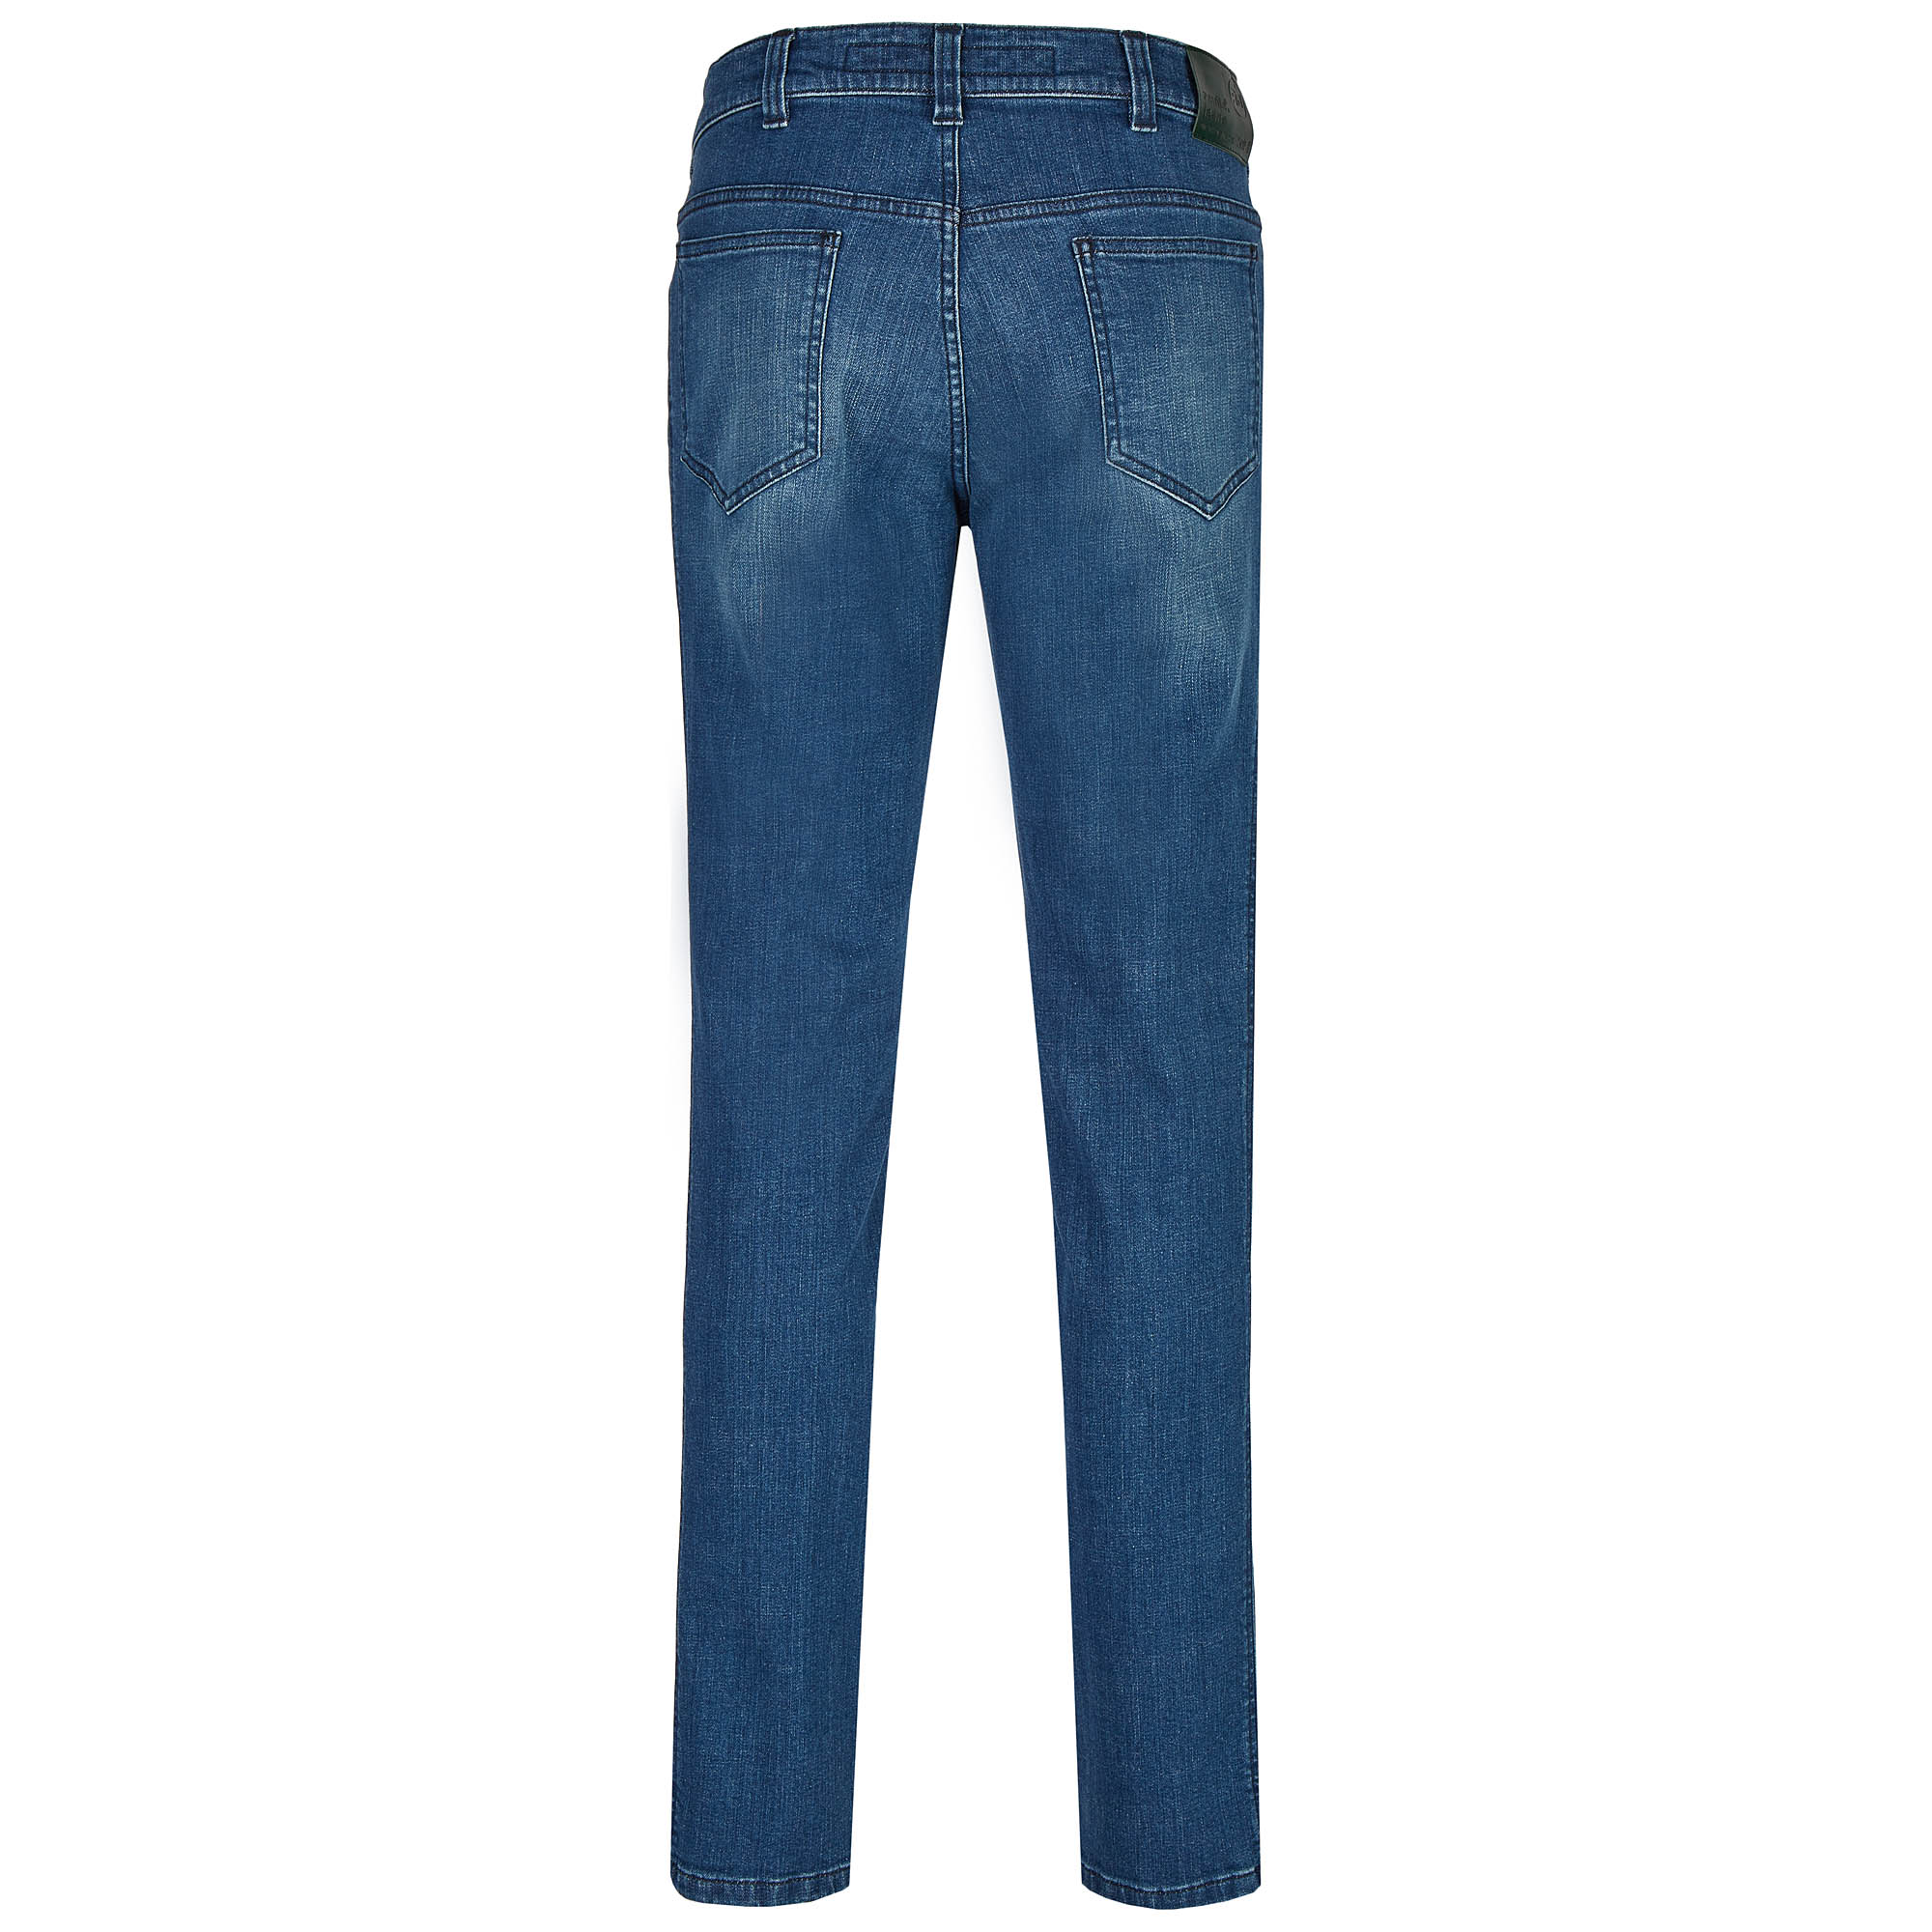 007120241330 2 Revils Jeans Hosen